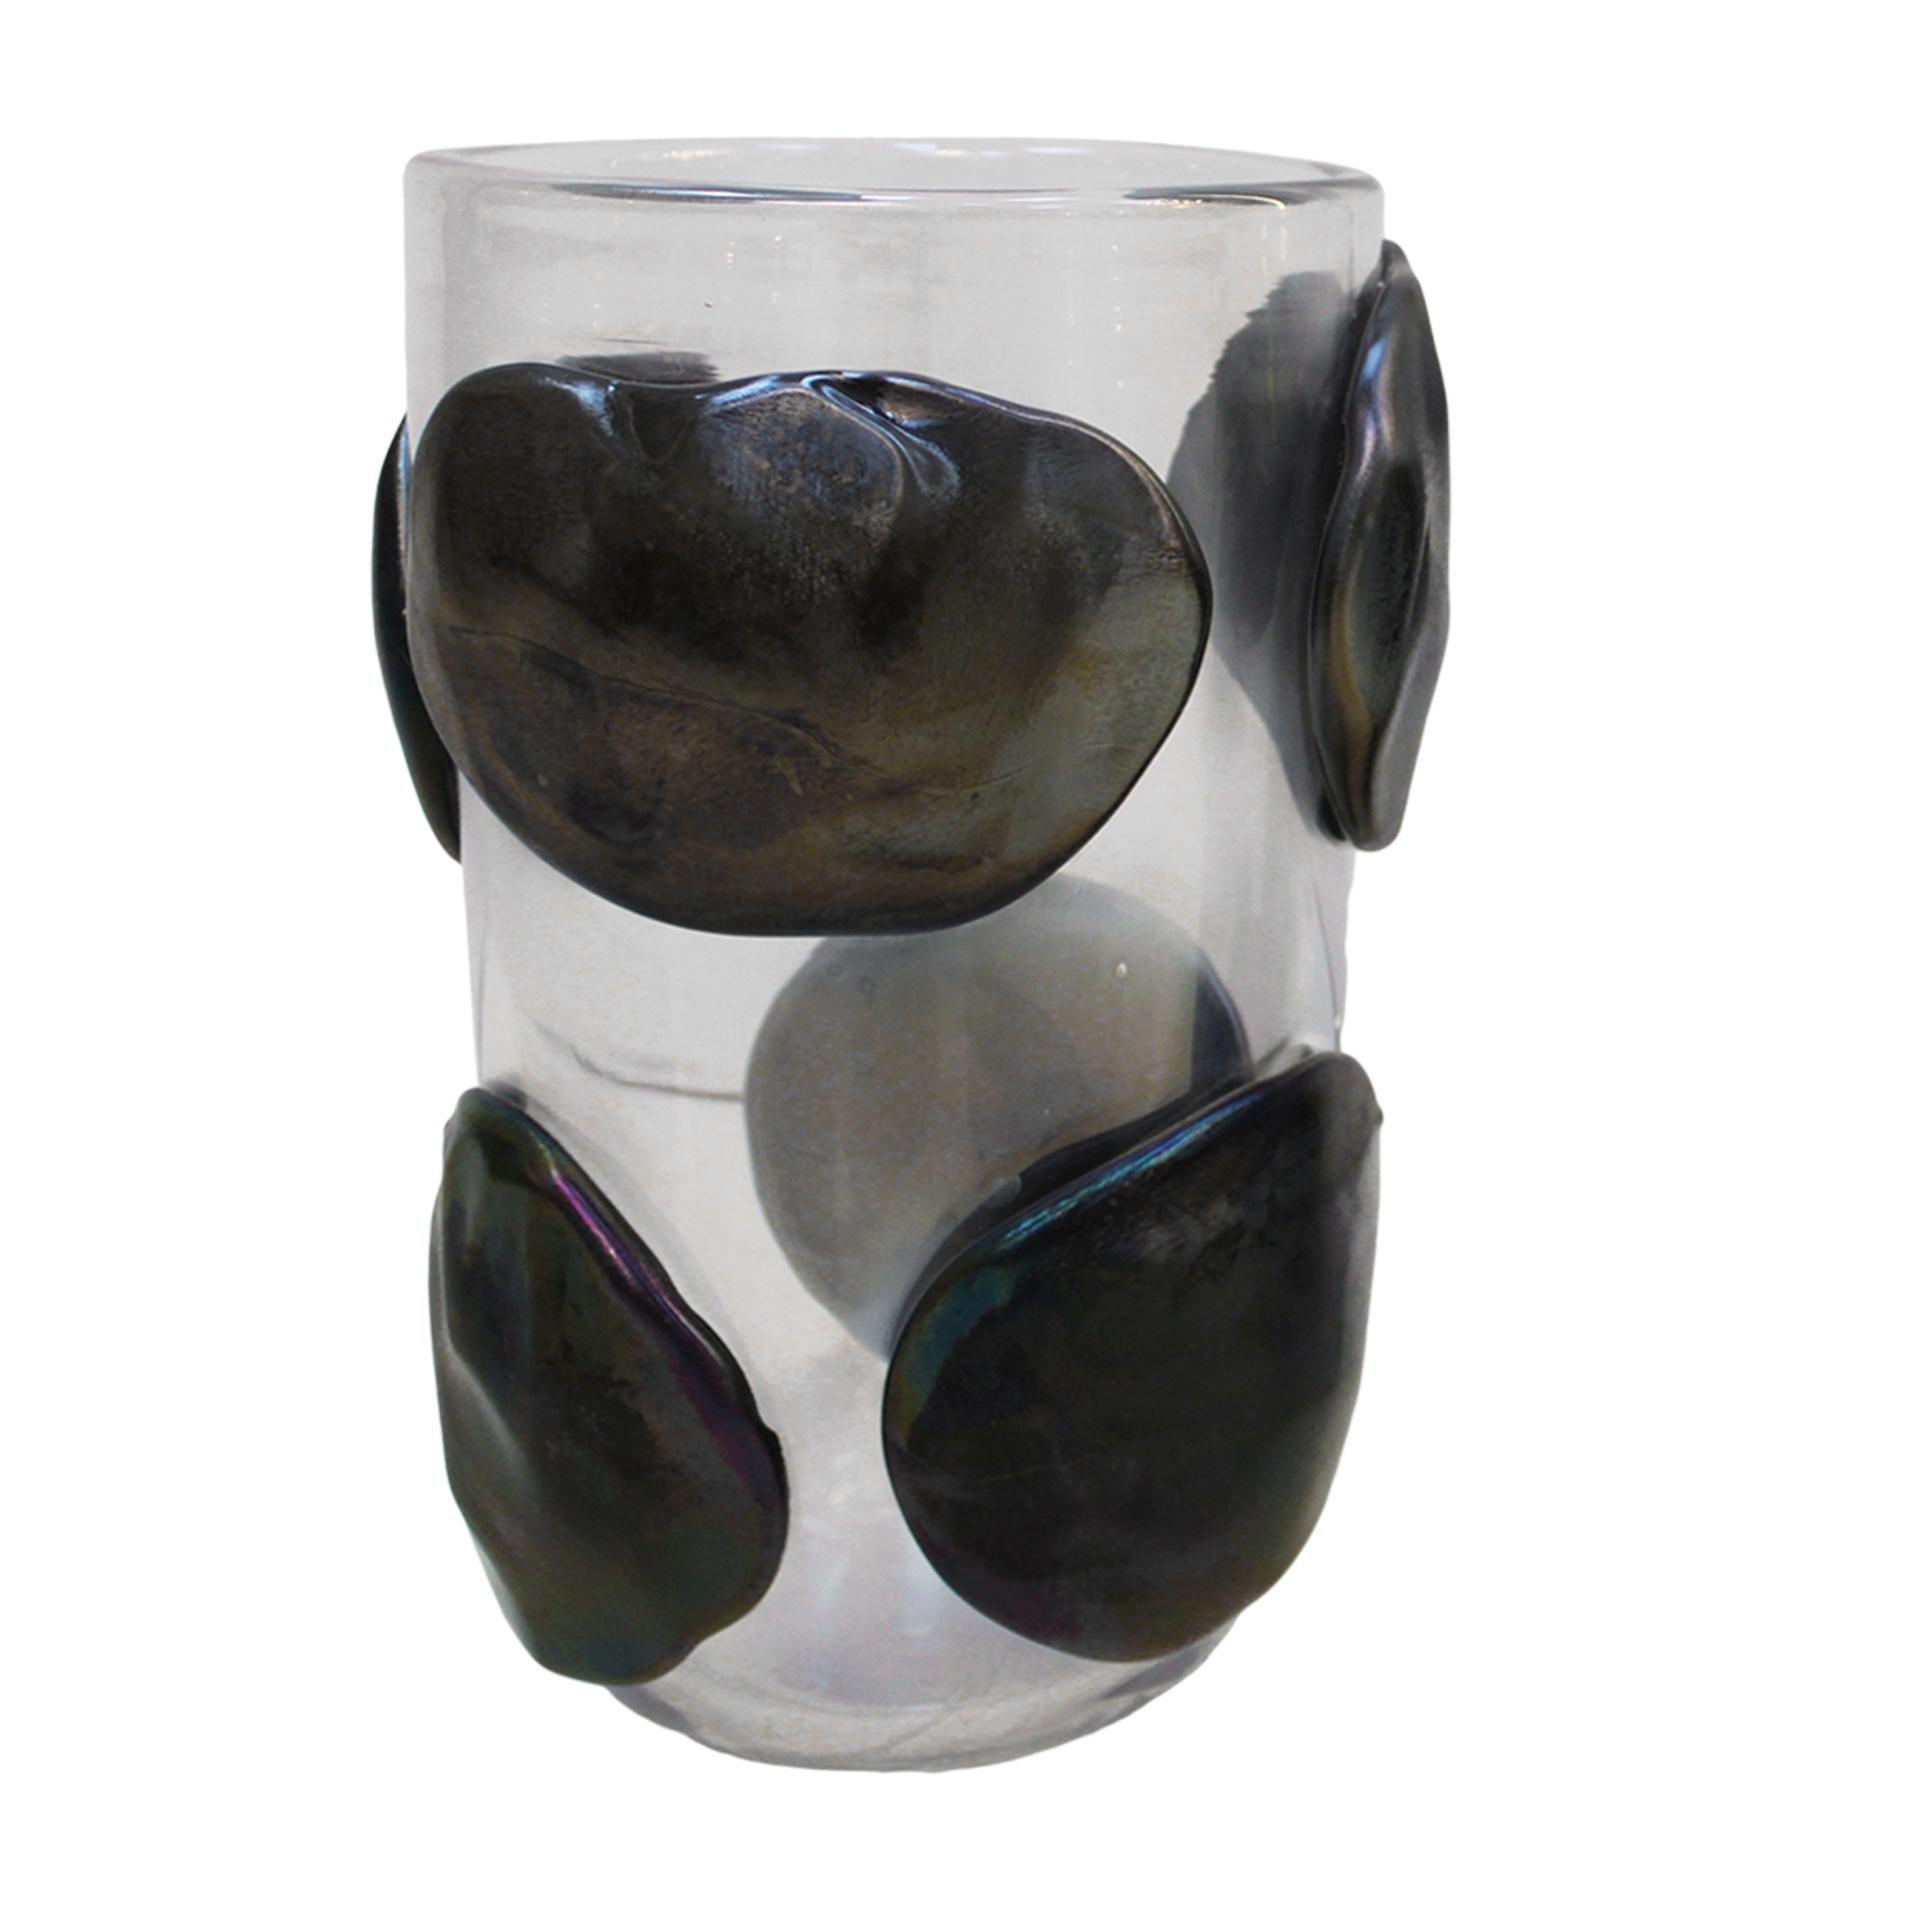 Murano mundgeblasene Vase aus Opalglas von dem italienischen Glasbläser Costantini. Der Korpus ist mit runden, frei geformten Reliefs verziert.

Diese exquisite venezianische Vase ist unten signiert, Italien, 1980er Jahre.

Jeder Artikel, den LA